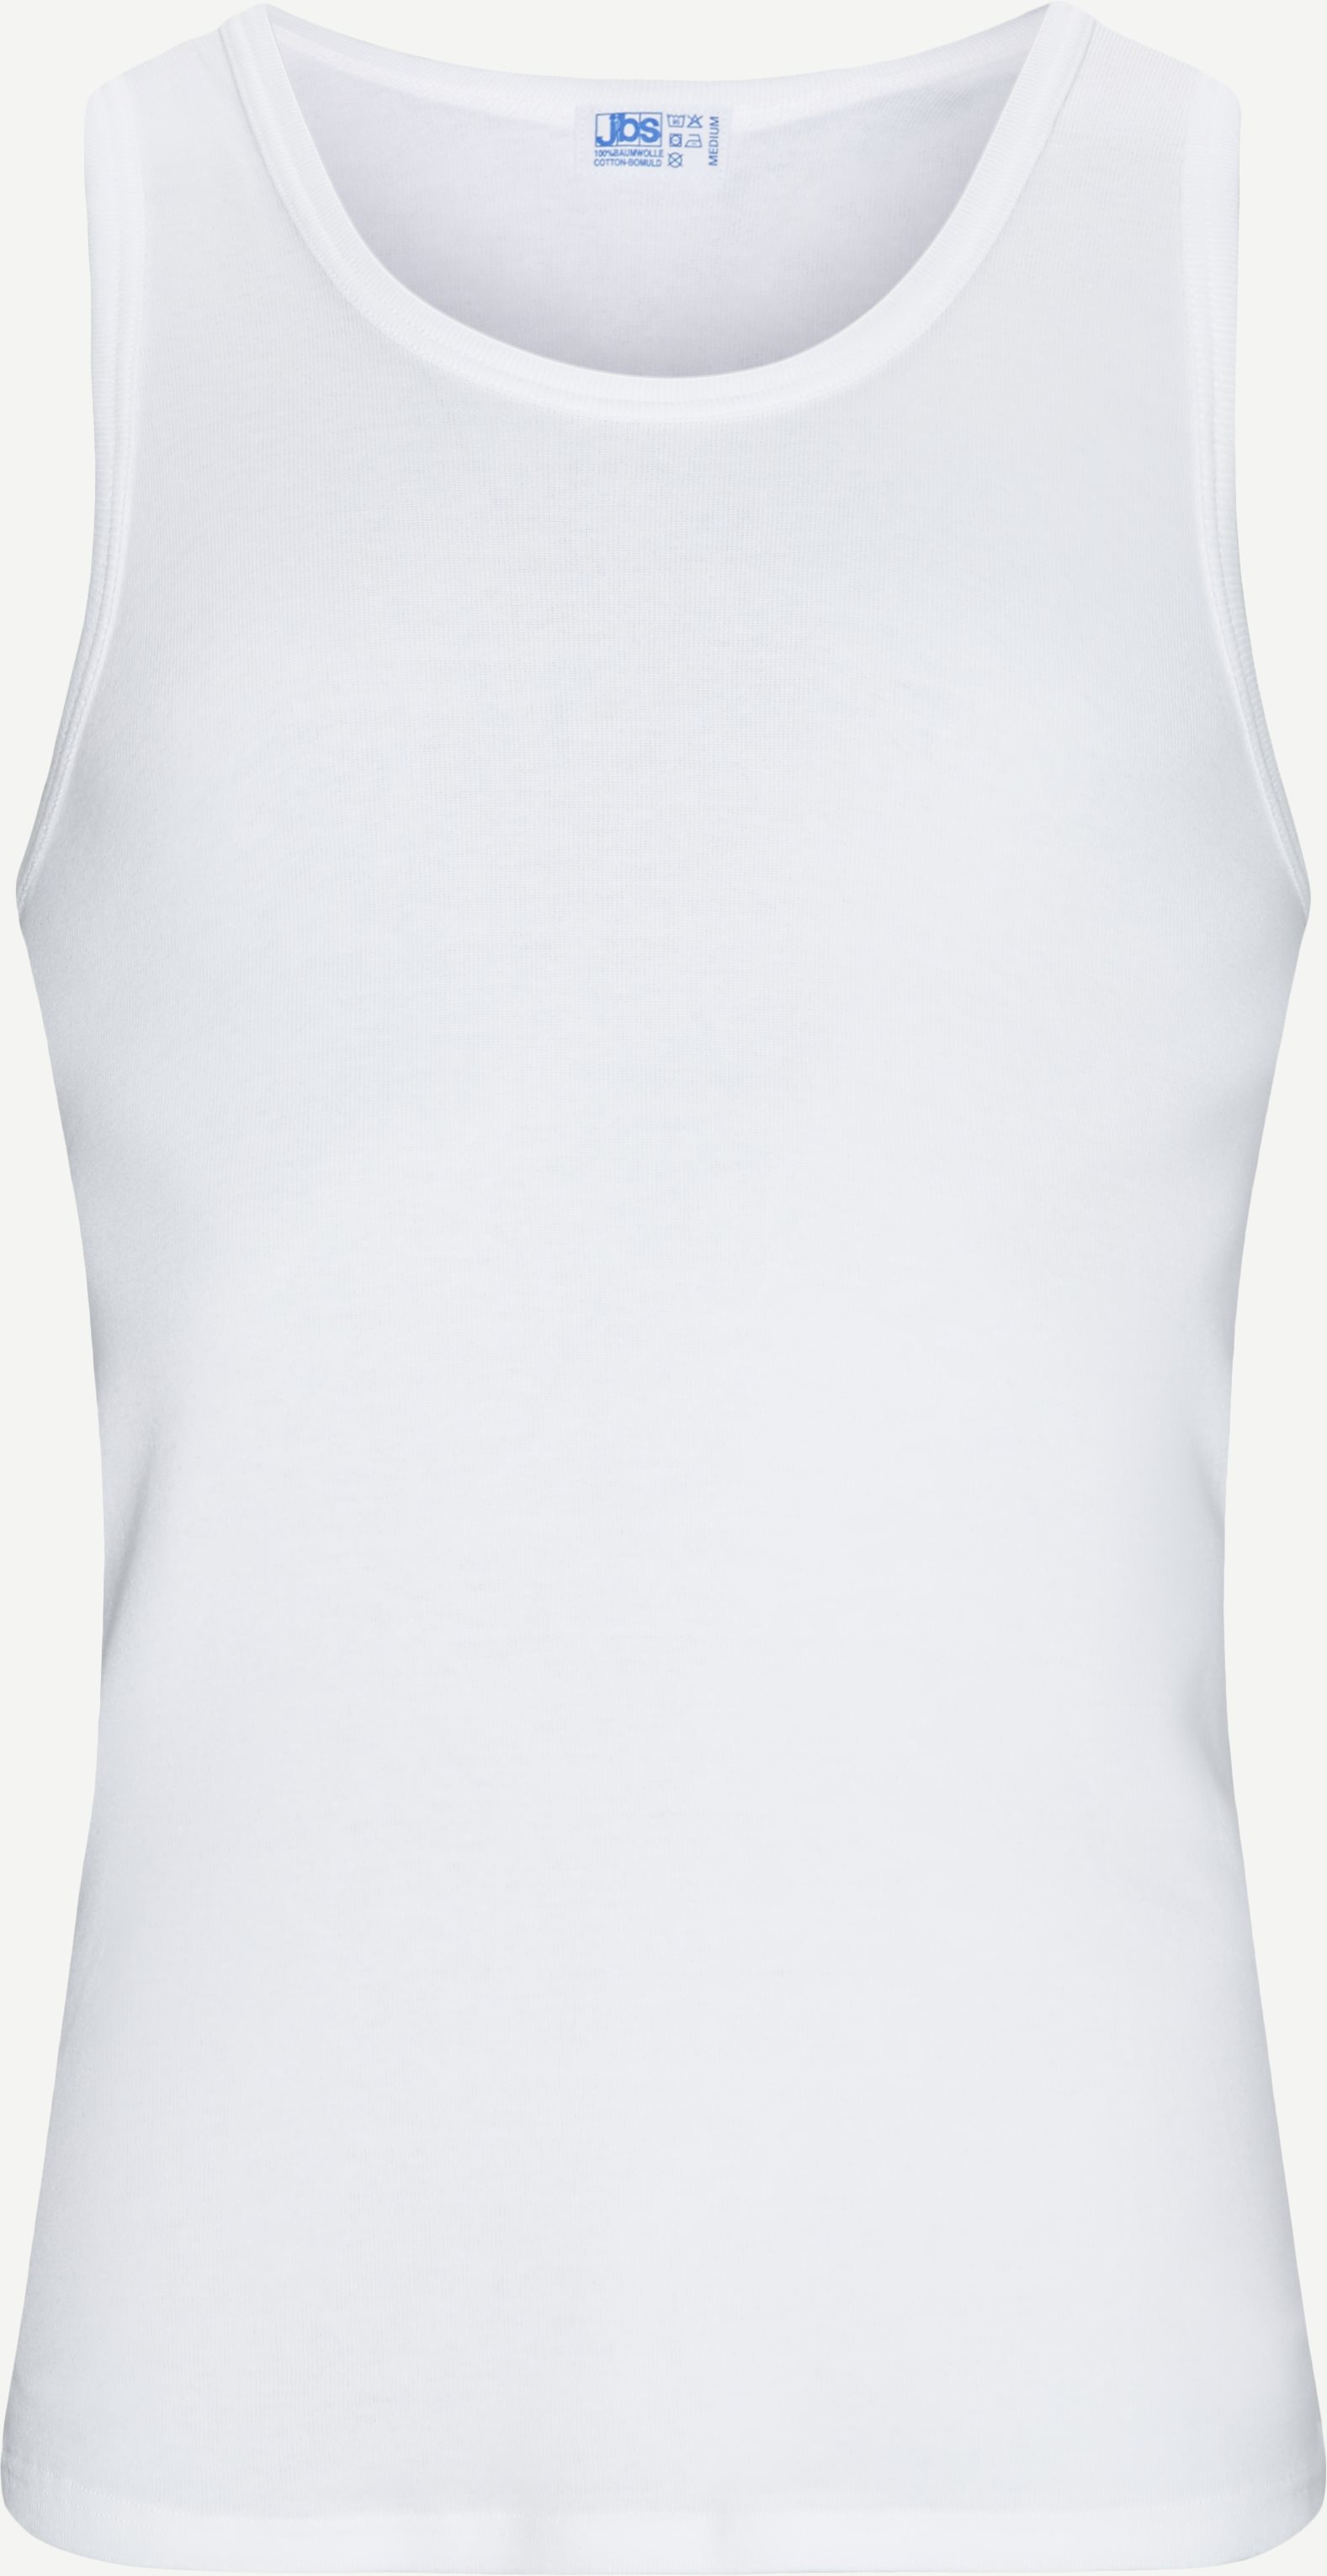 JBS Underwear 300/338-1 SINGLET ORIGINAL White